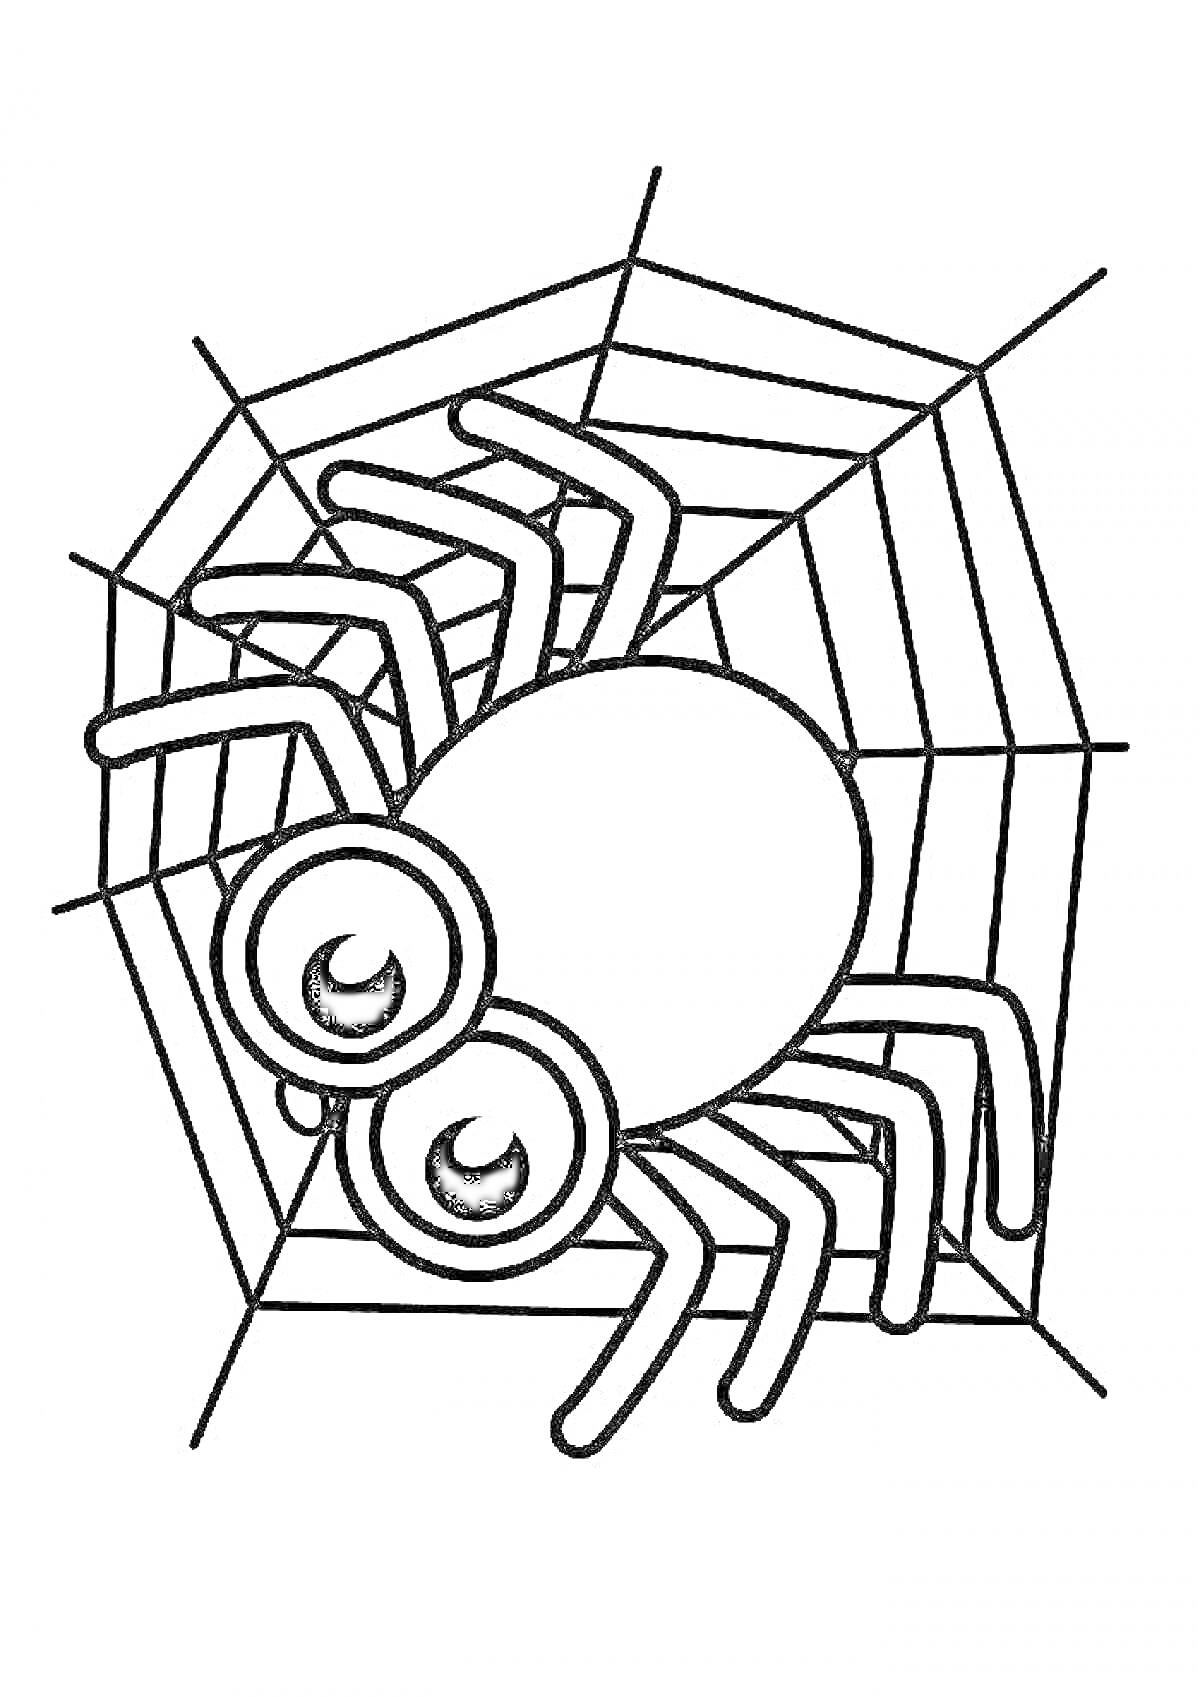 Раскраска Паук на паутине с большими глазами